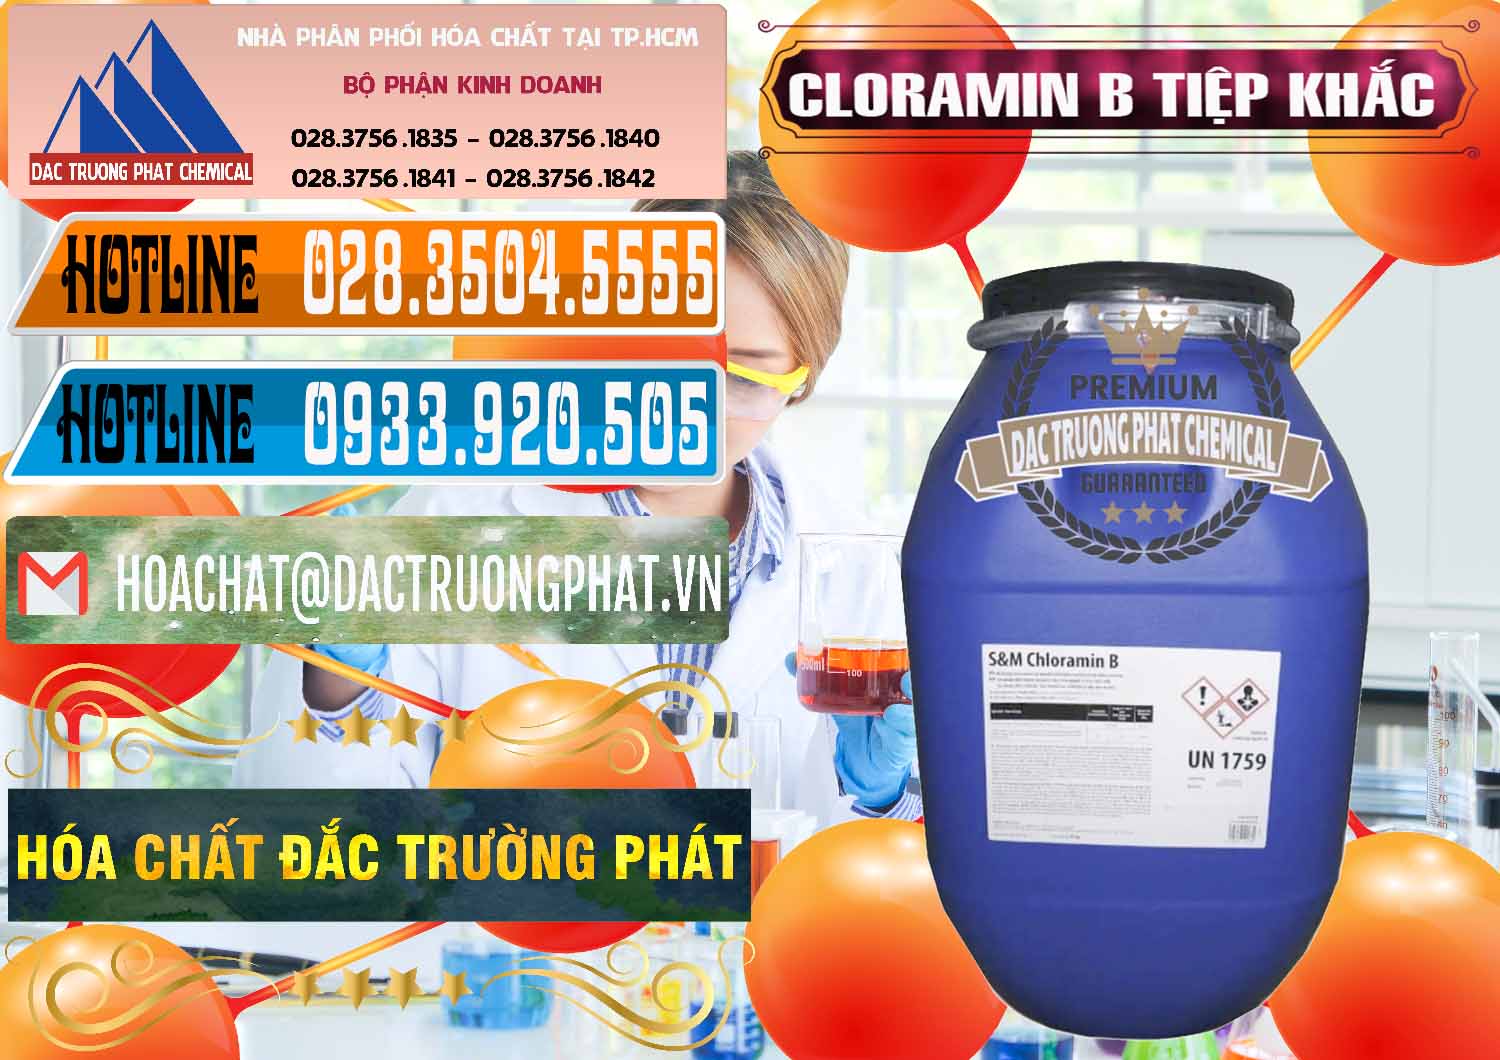 Đơn vị chuyên cung ứng ( bán ) Cloramin B Cộng Hòa Séc Tiệp Khắc Czech Republic - 0299 - Công ty kinh doanh _ phân phối hóa chất tại TP.HCM - stmp.net